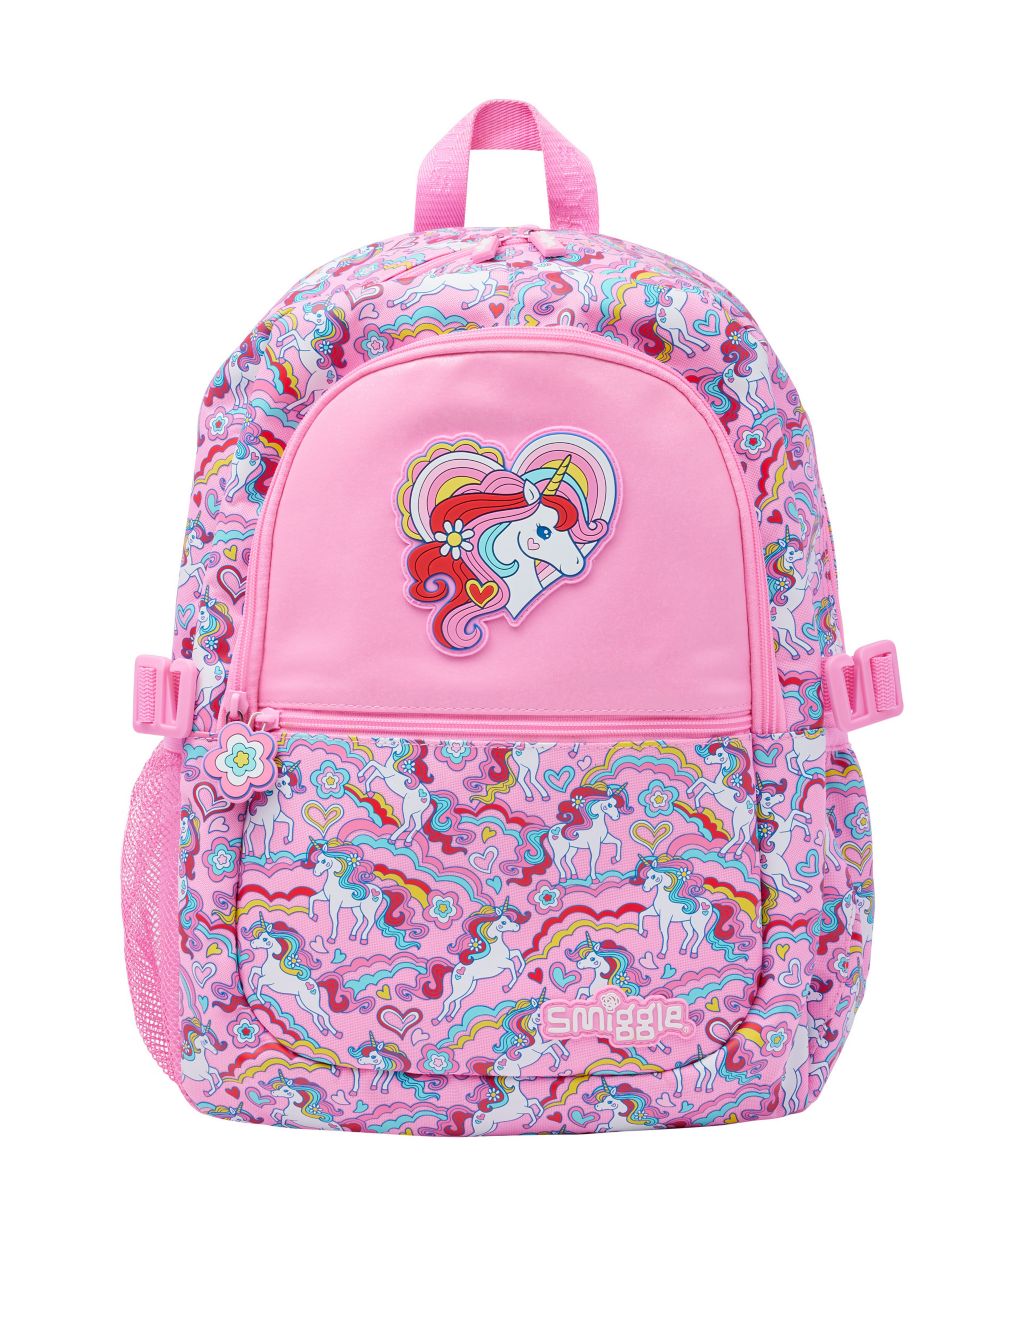 Kids' Patterned Backpack (3+ Yrs) image 1